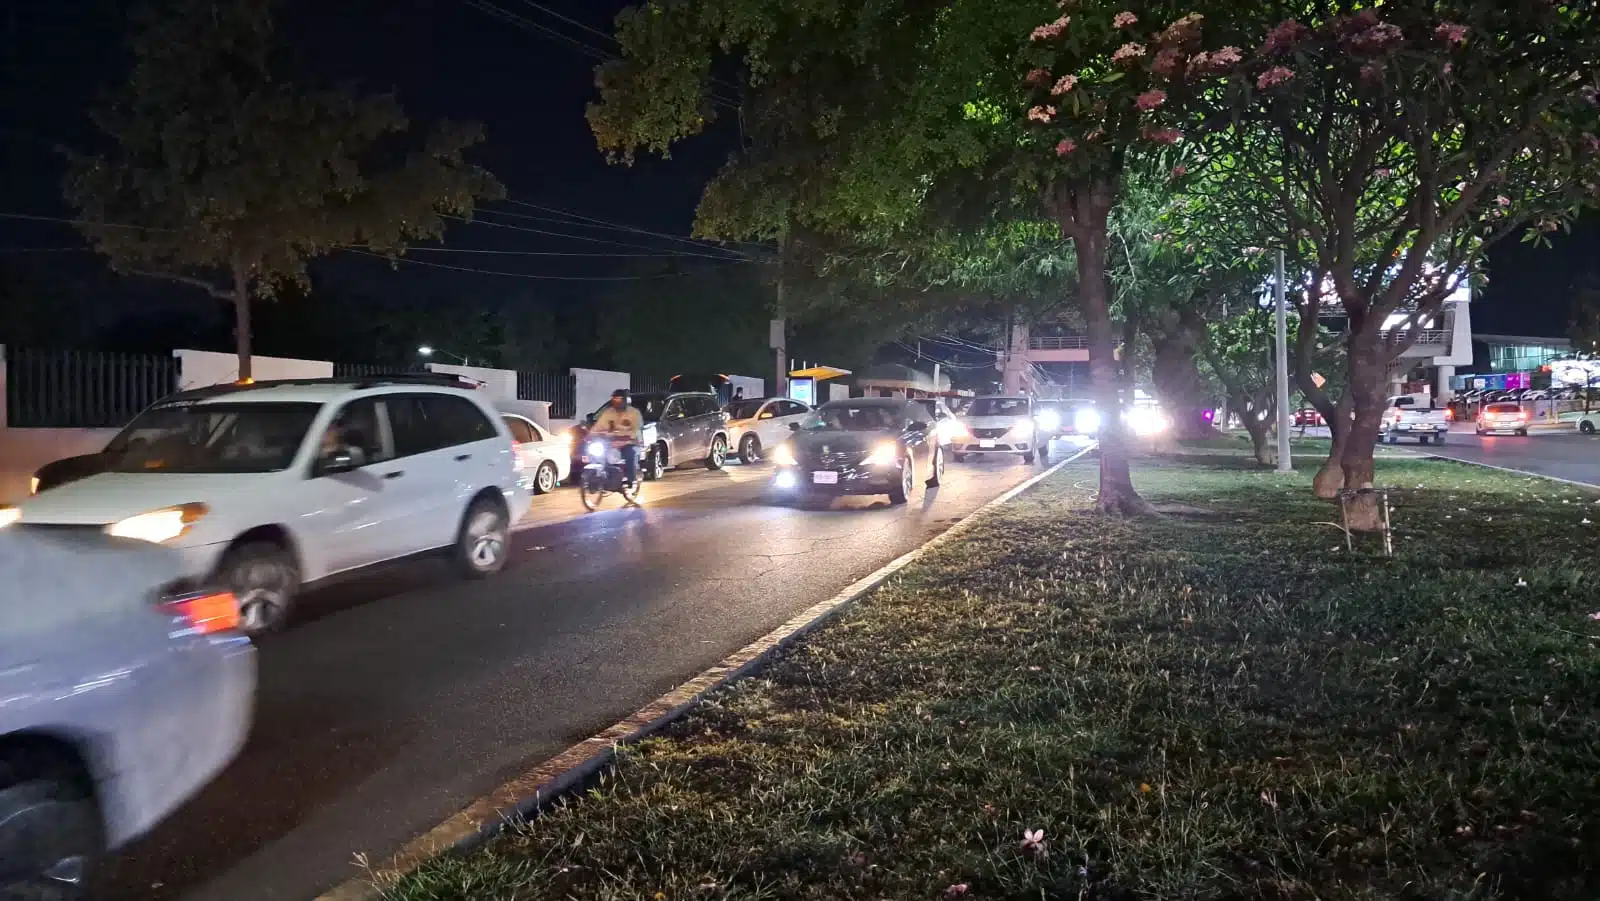 Carros estacionados que fueron afectados por ponchallantas que tiraron sobre la avenida Álvaro Obregón en Culiacán y otros pasando por ahí